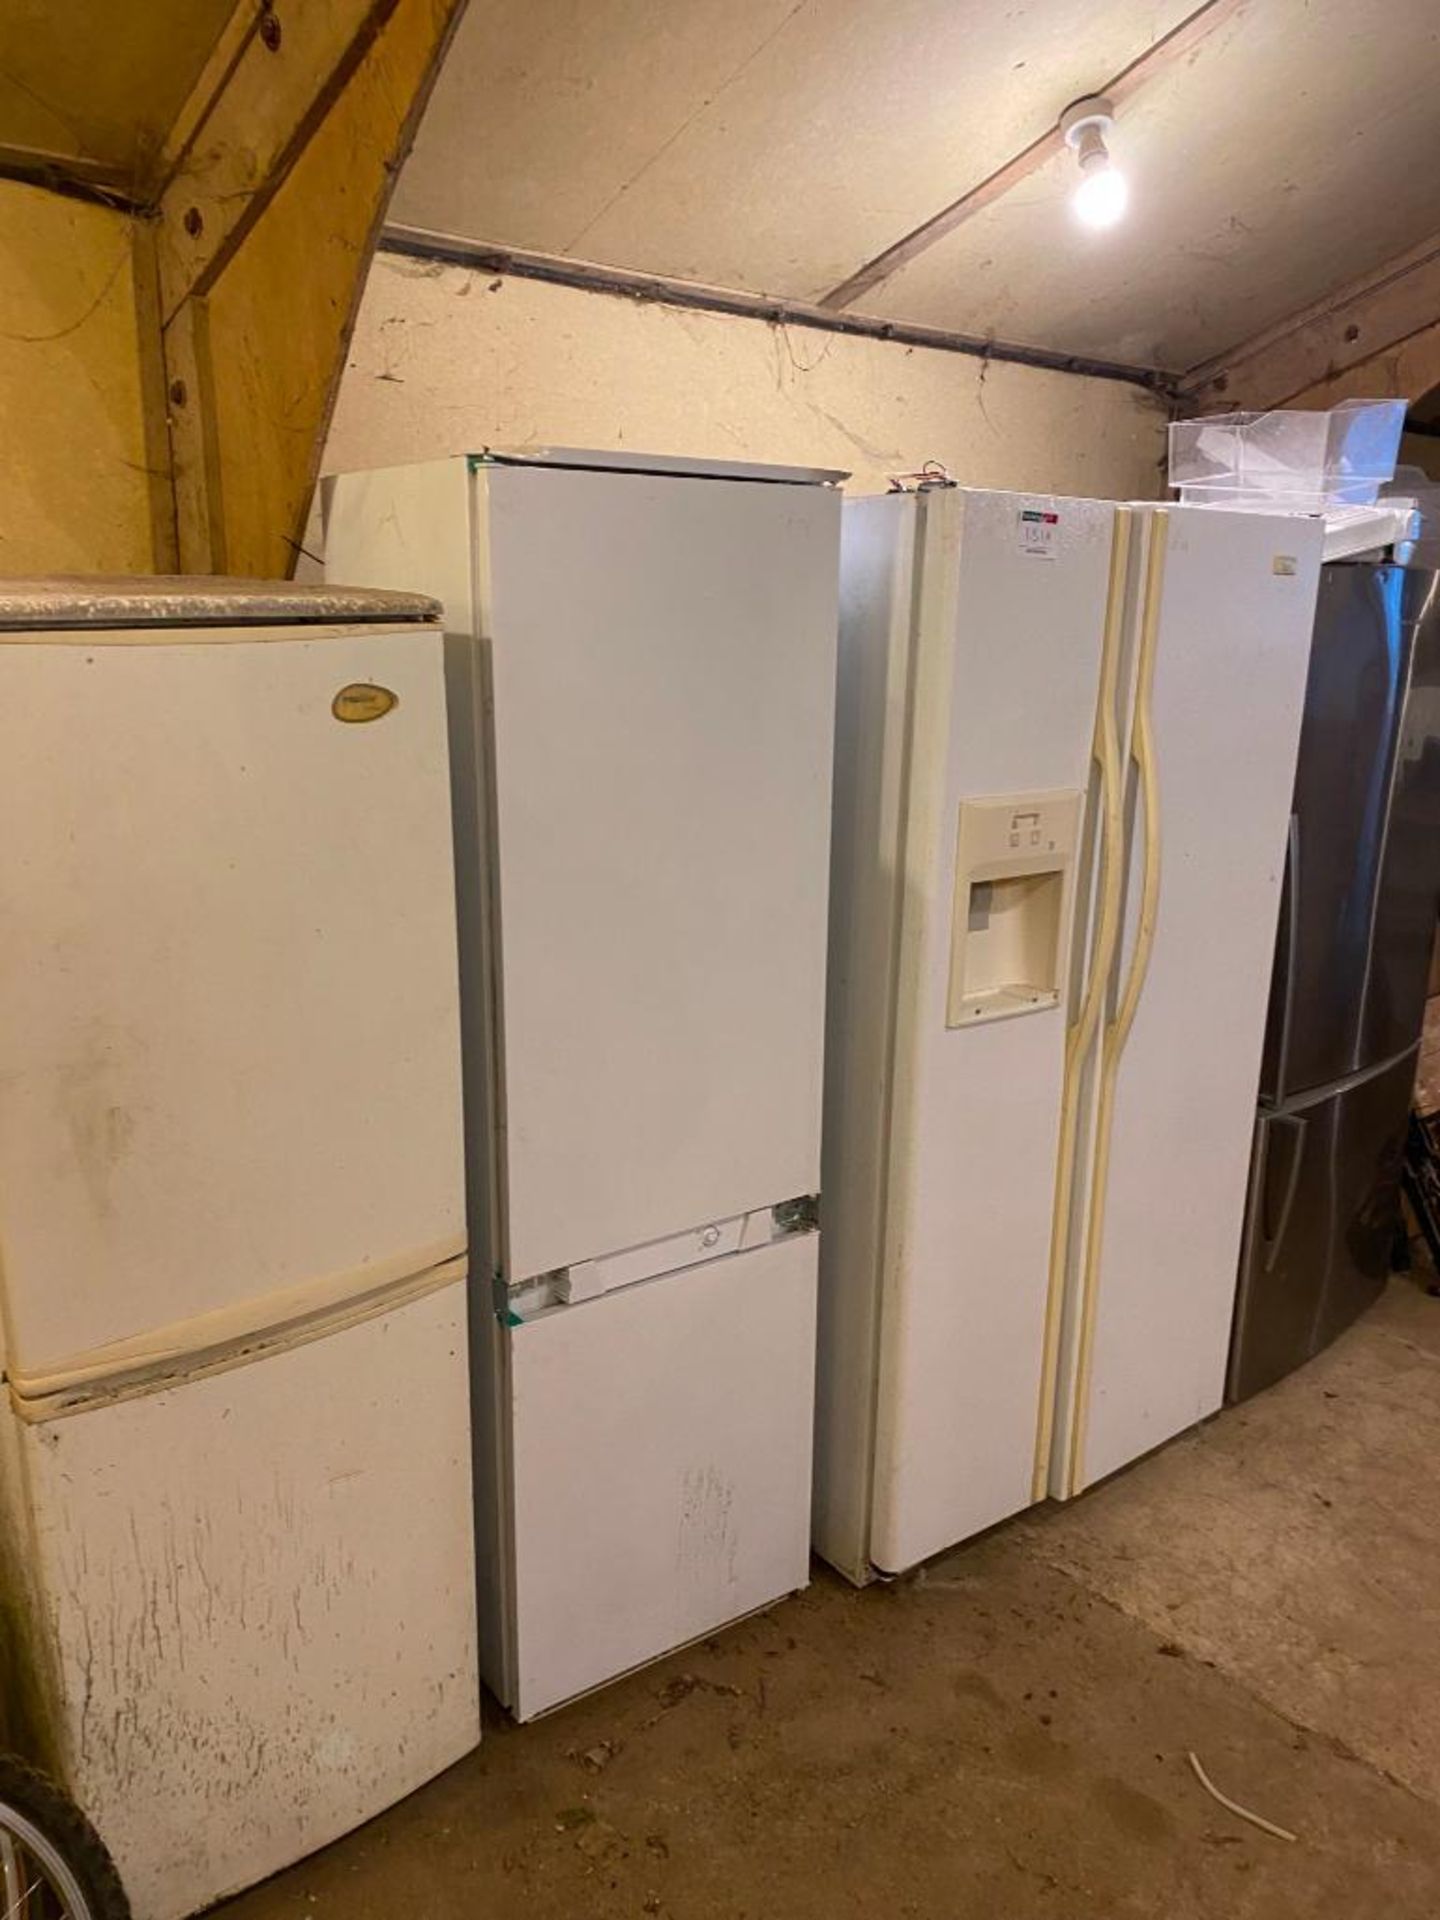 4 (no) fridges